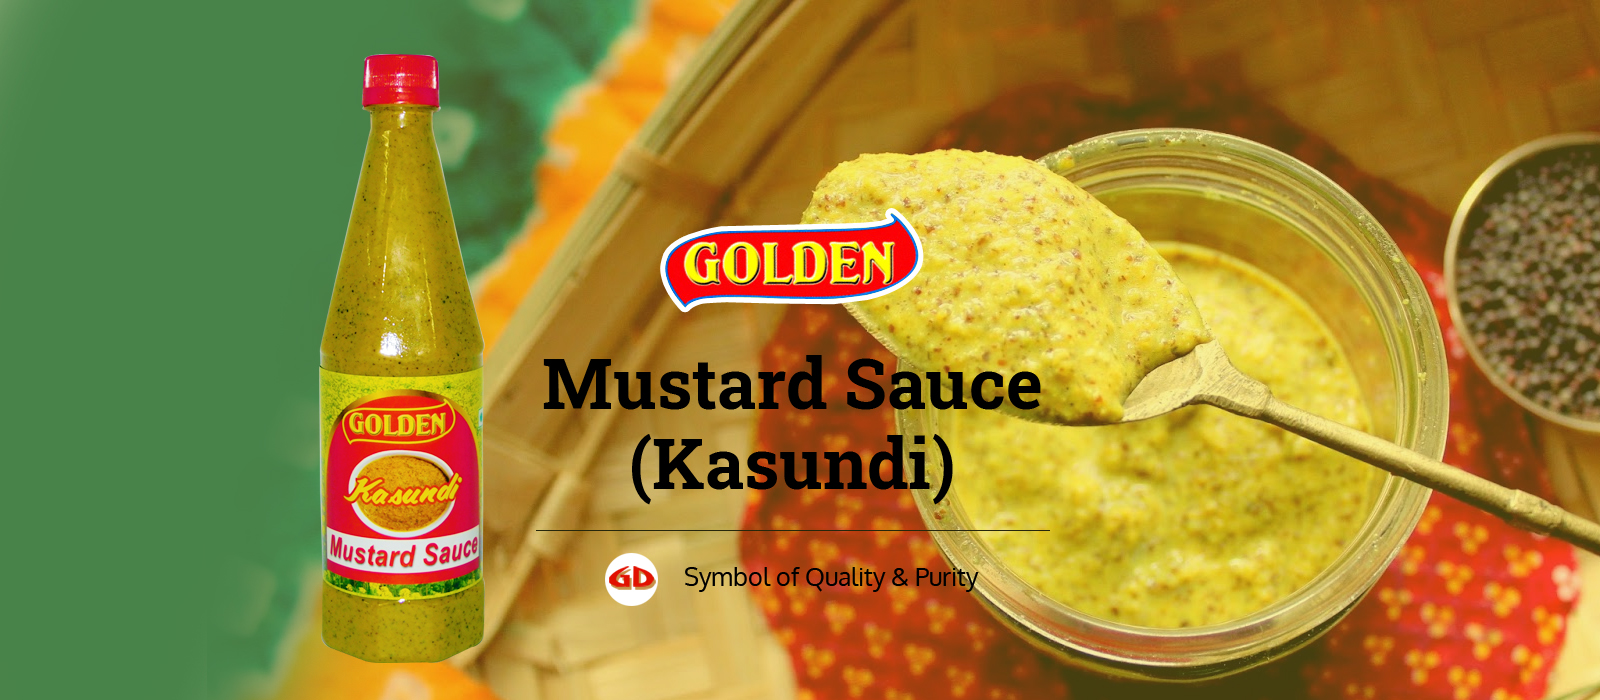 Golden Mustard Sauce (Kasundi)